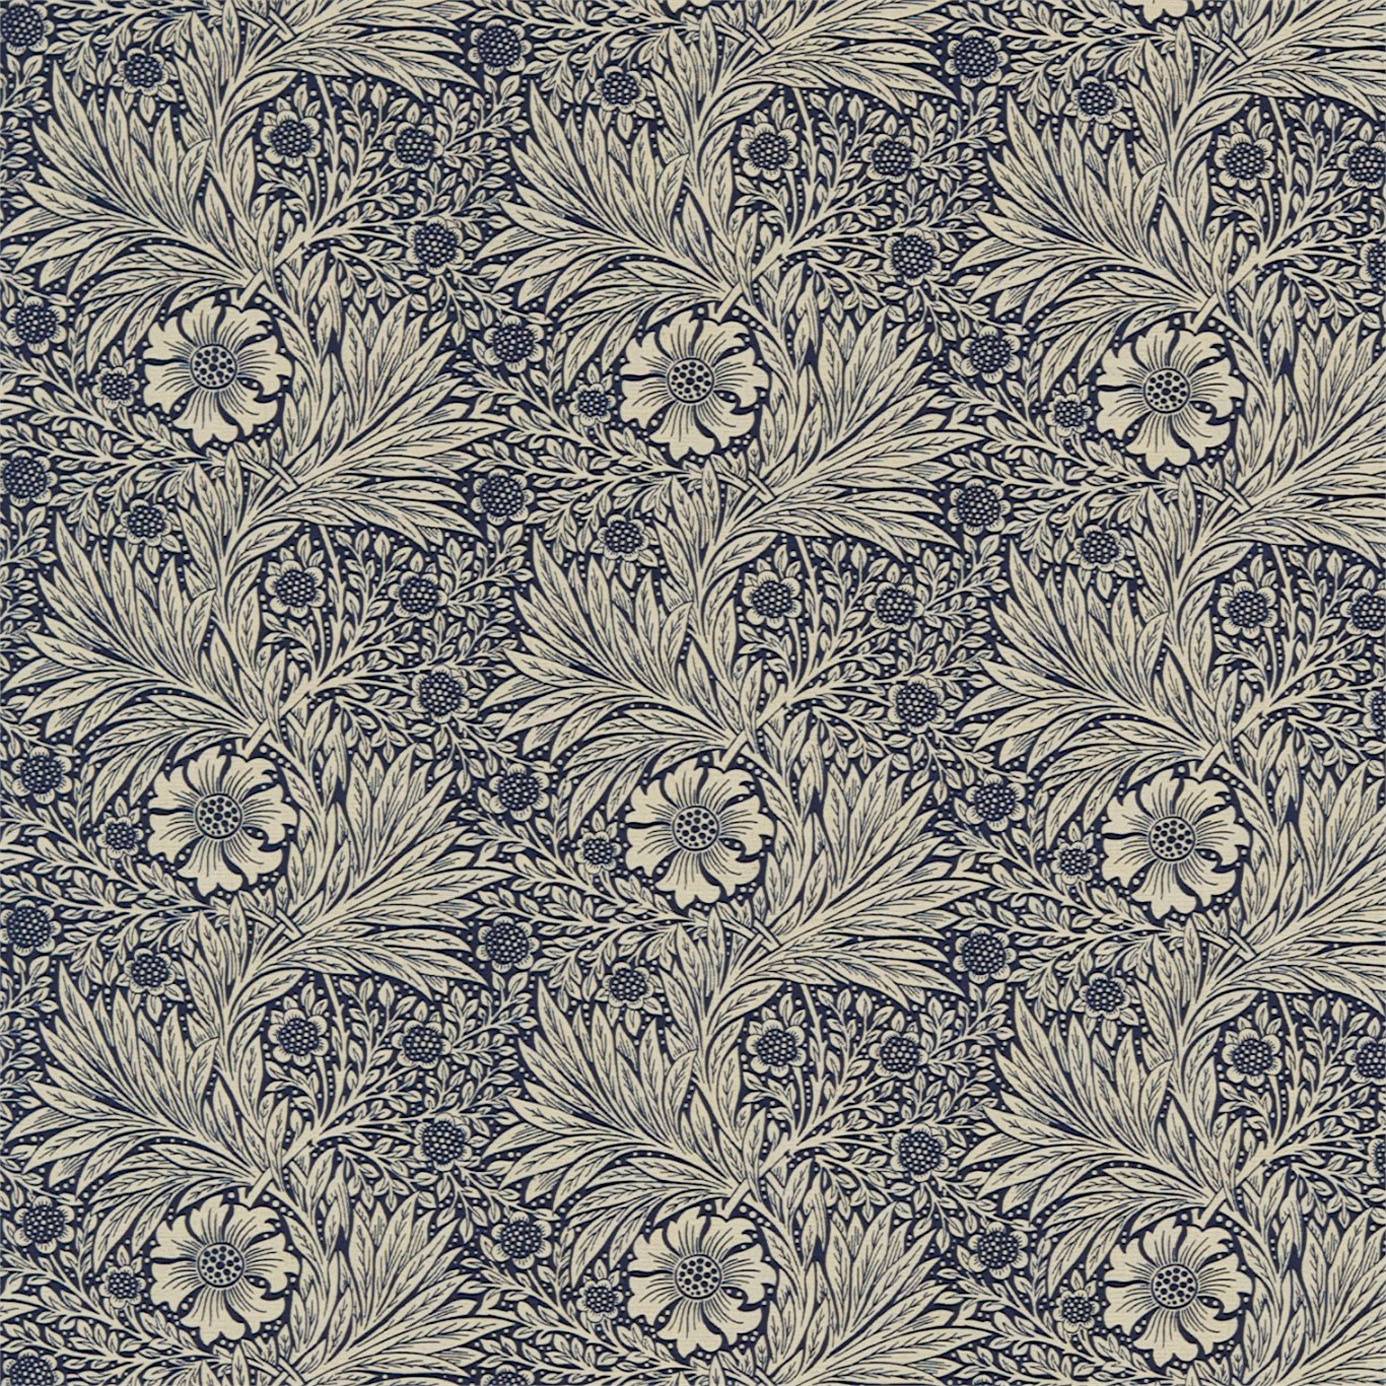 Marigold Fabric - Indigo/Linen (220320) - William Morris & Co Archive ...